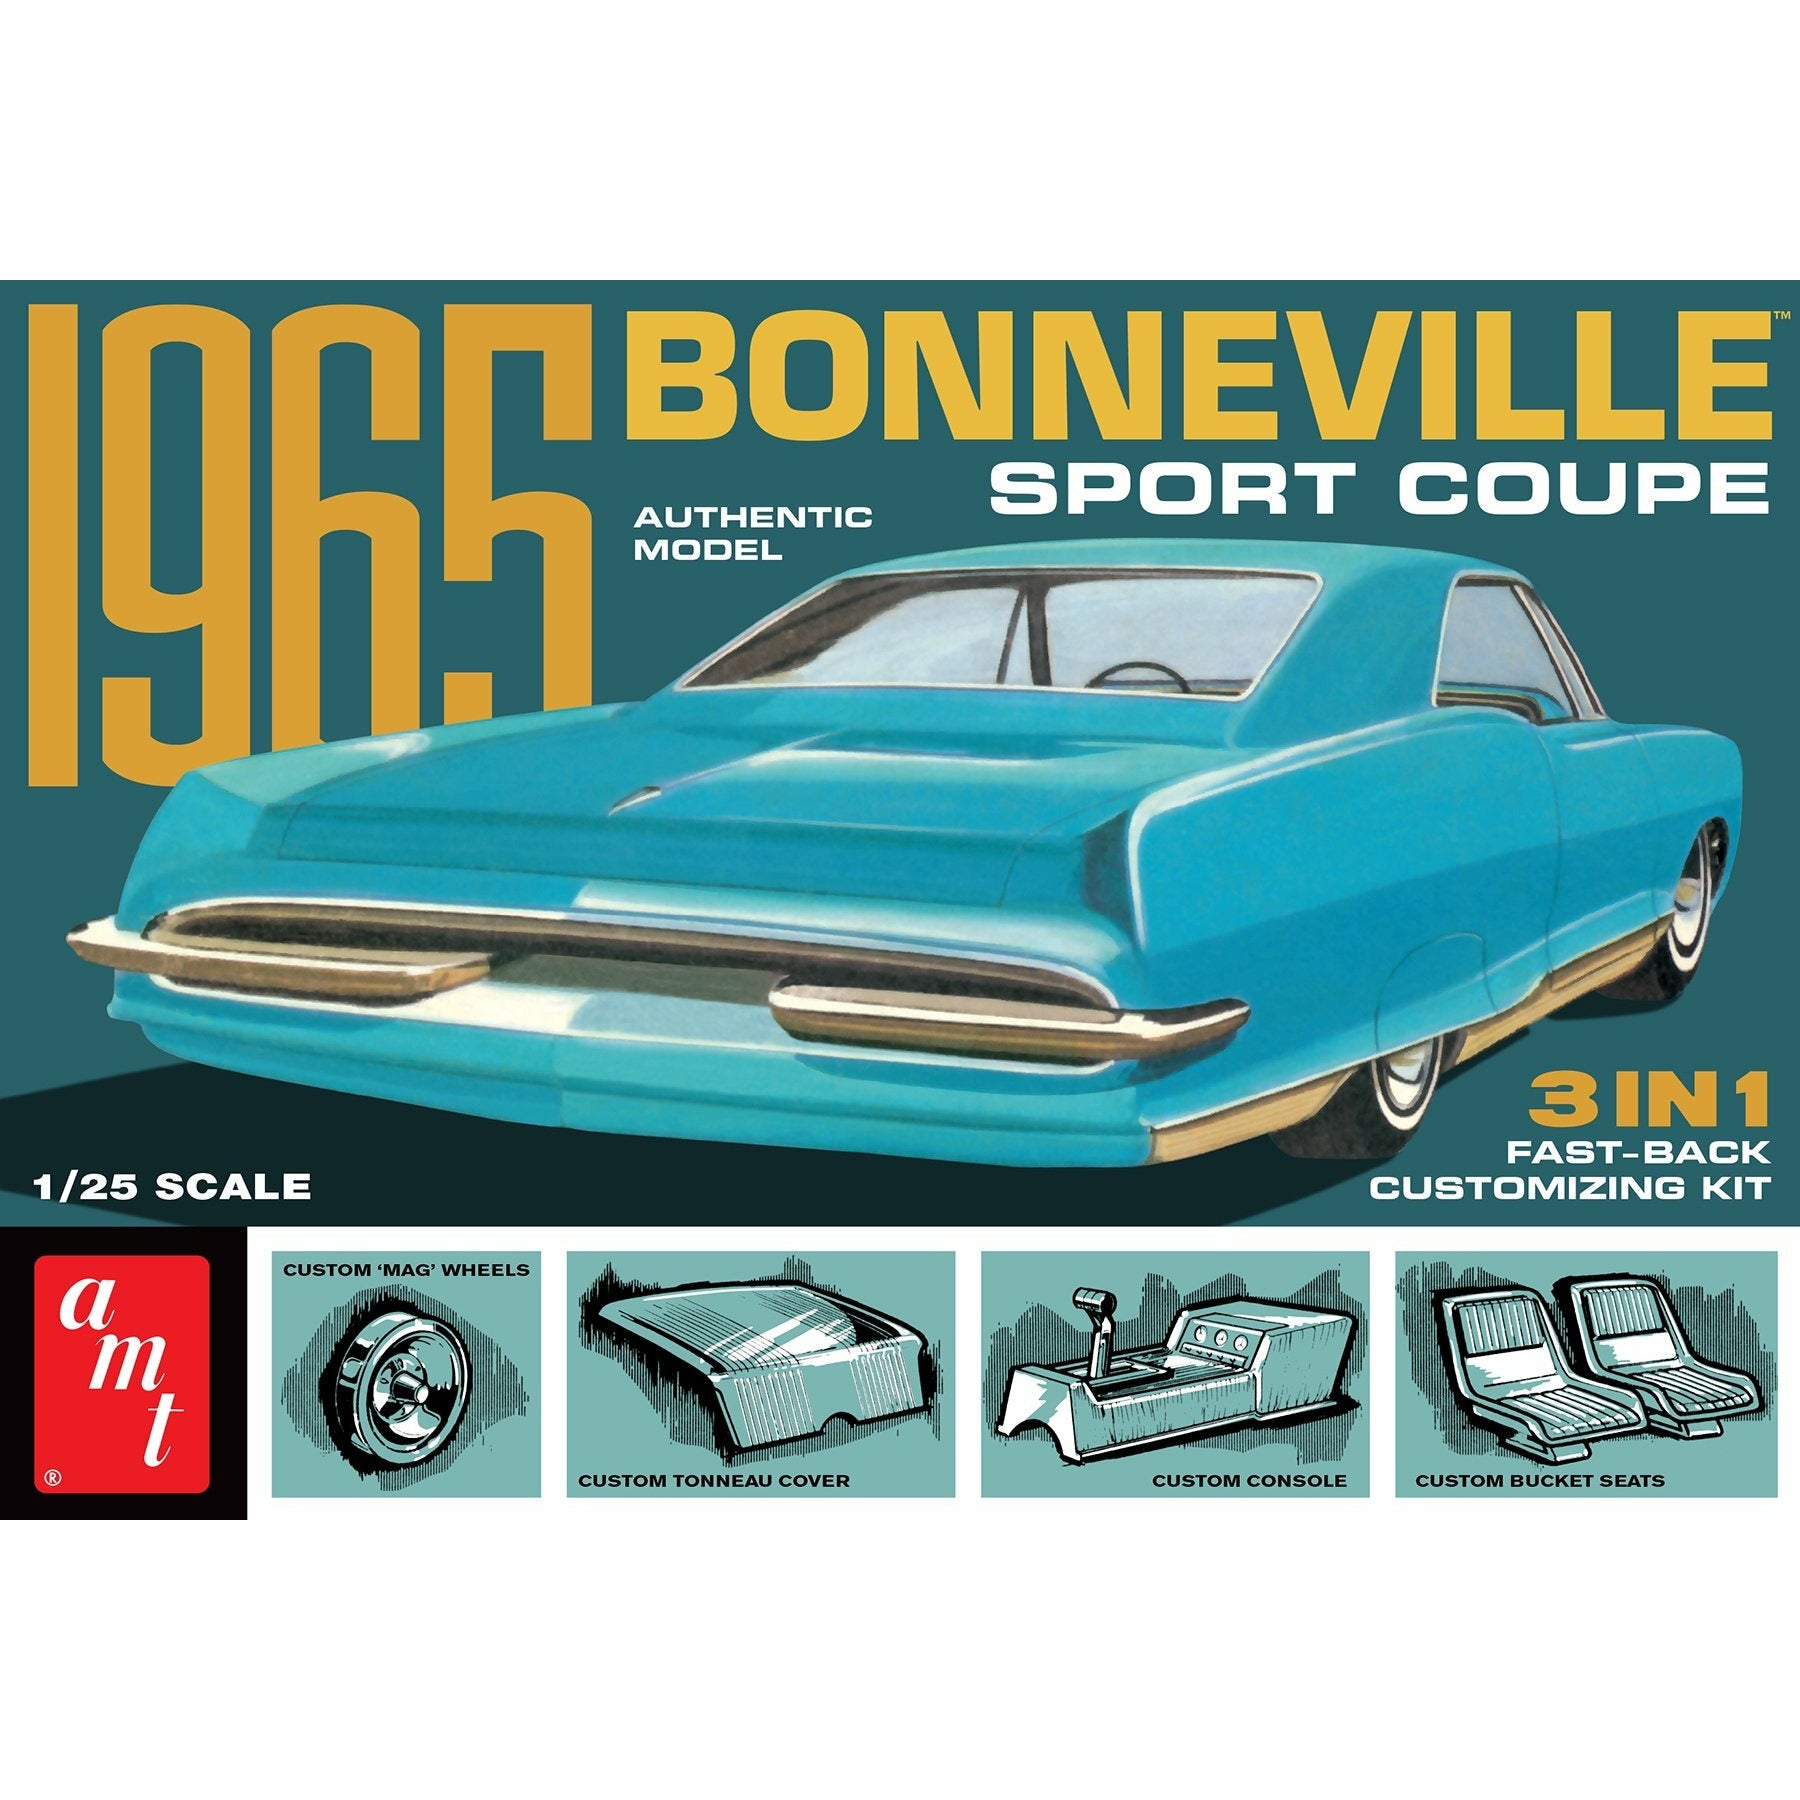 1965 Pontiac Bonneville Sport Coupe 1/25 Model Car Kit #1260 by AMT